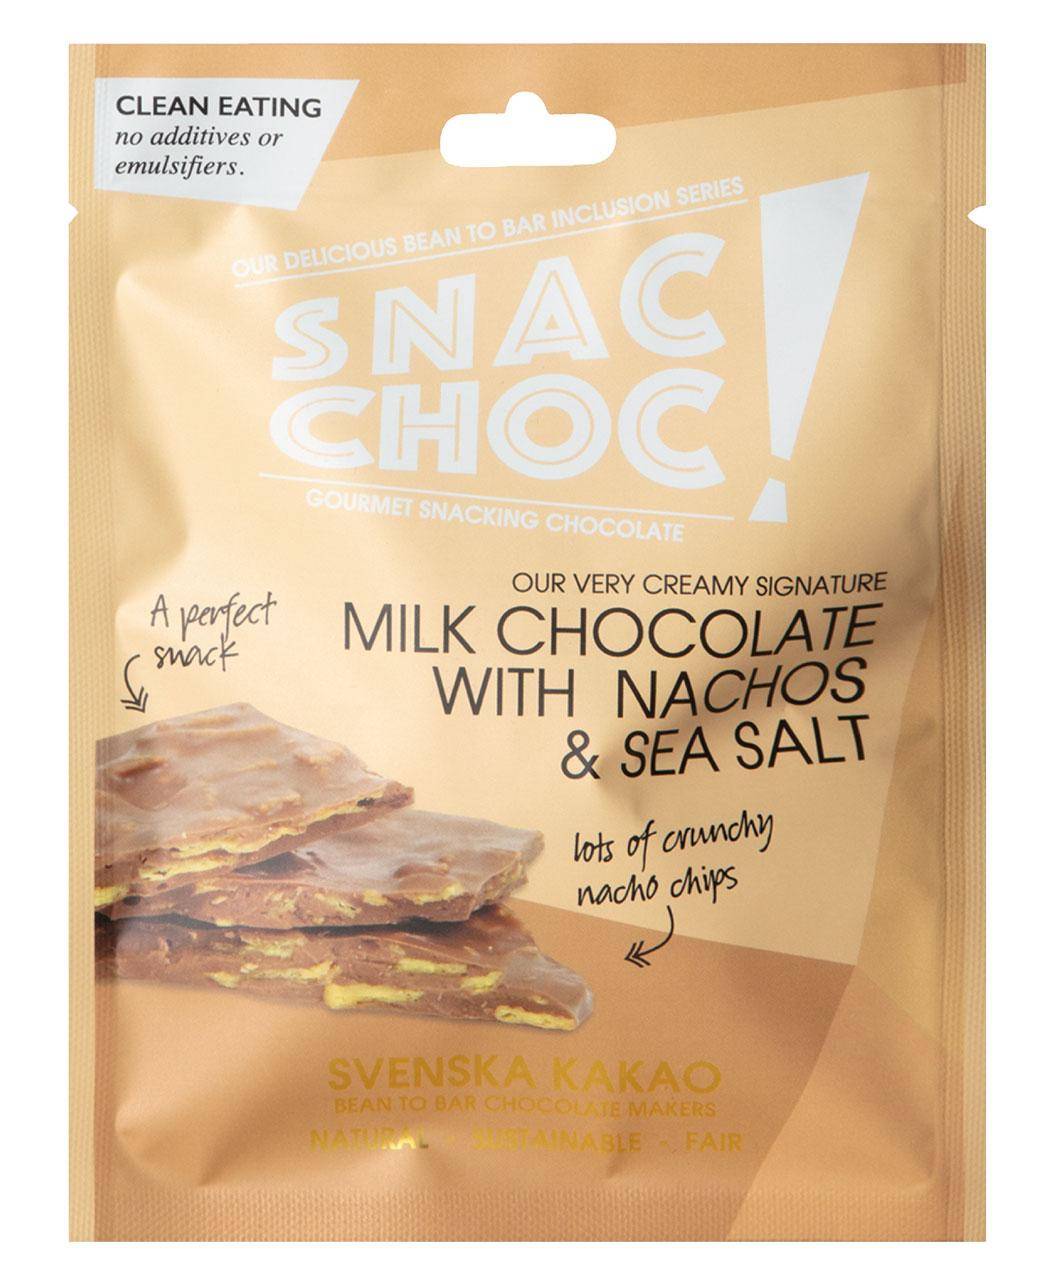 Verpackung der Snac Choc Milchschokolade mit Nachos und Meersalz - orange Tüte mit weißer und schwarzer Schrift und Bild der Bruchschokolade